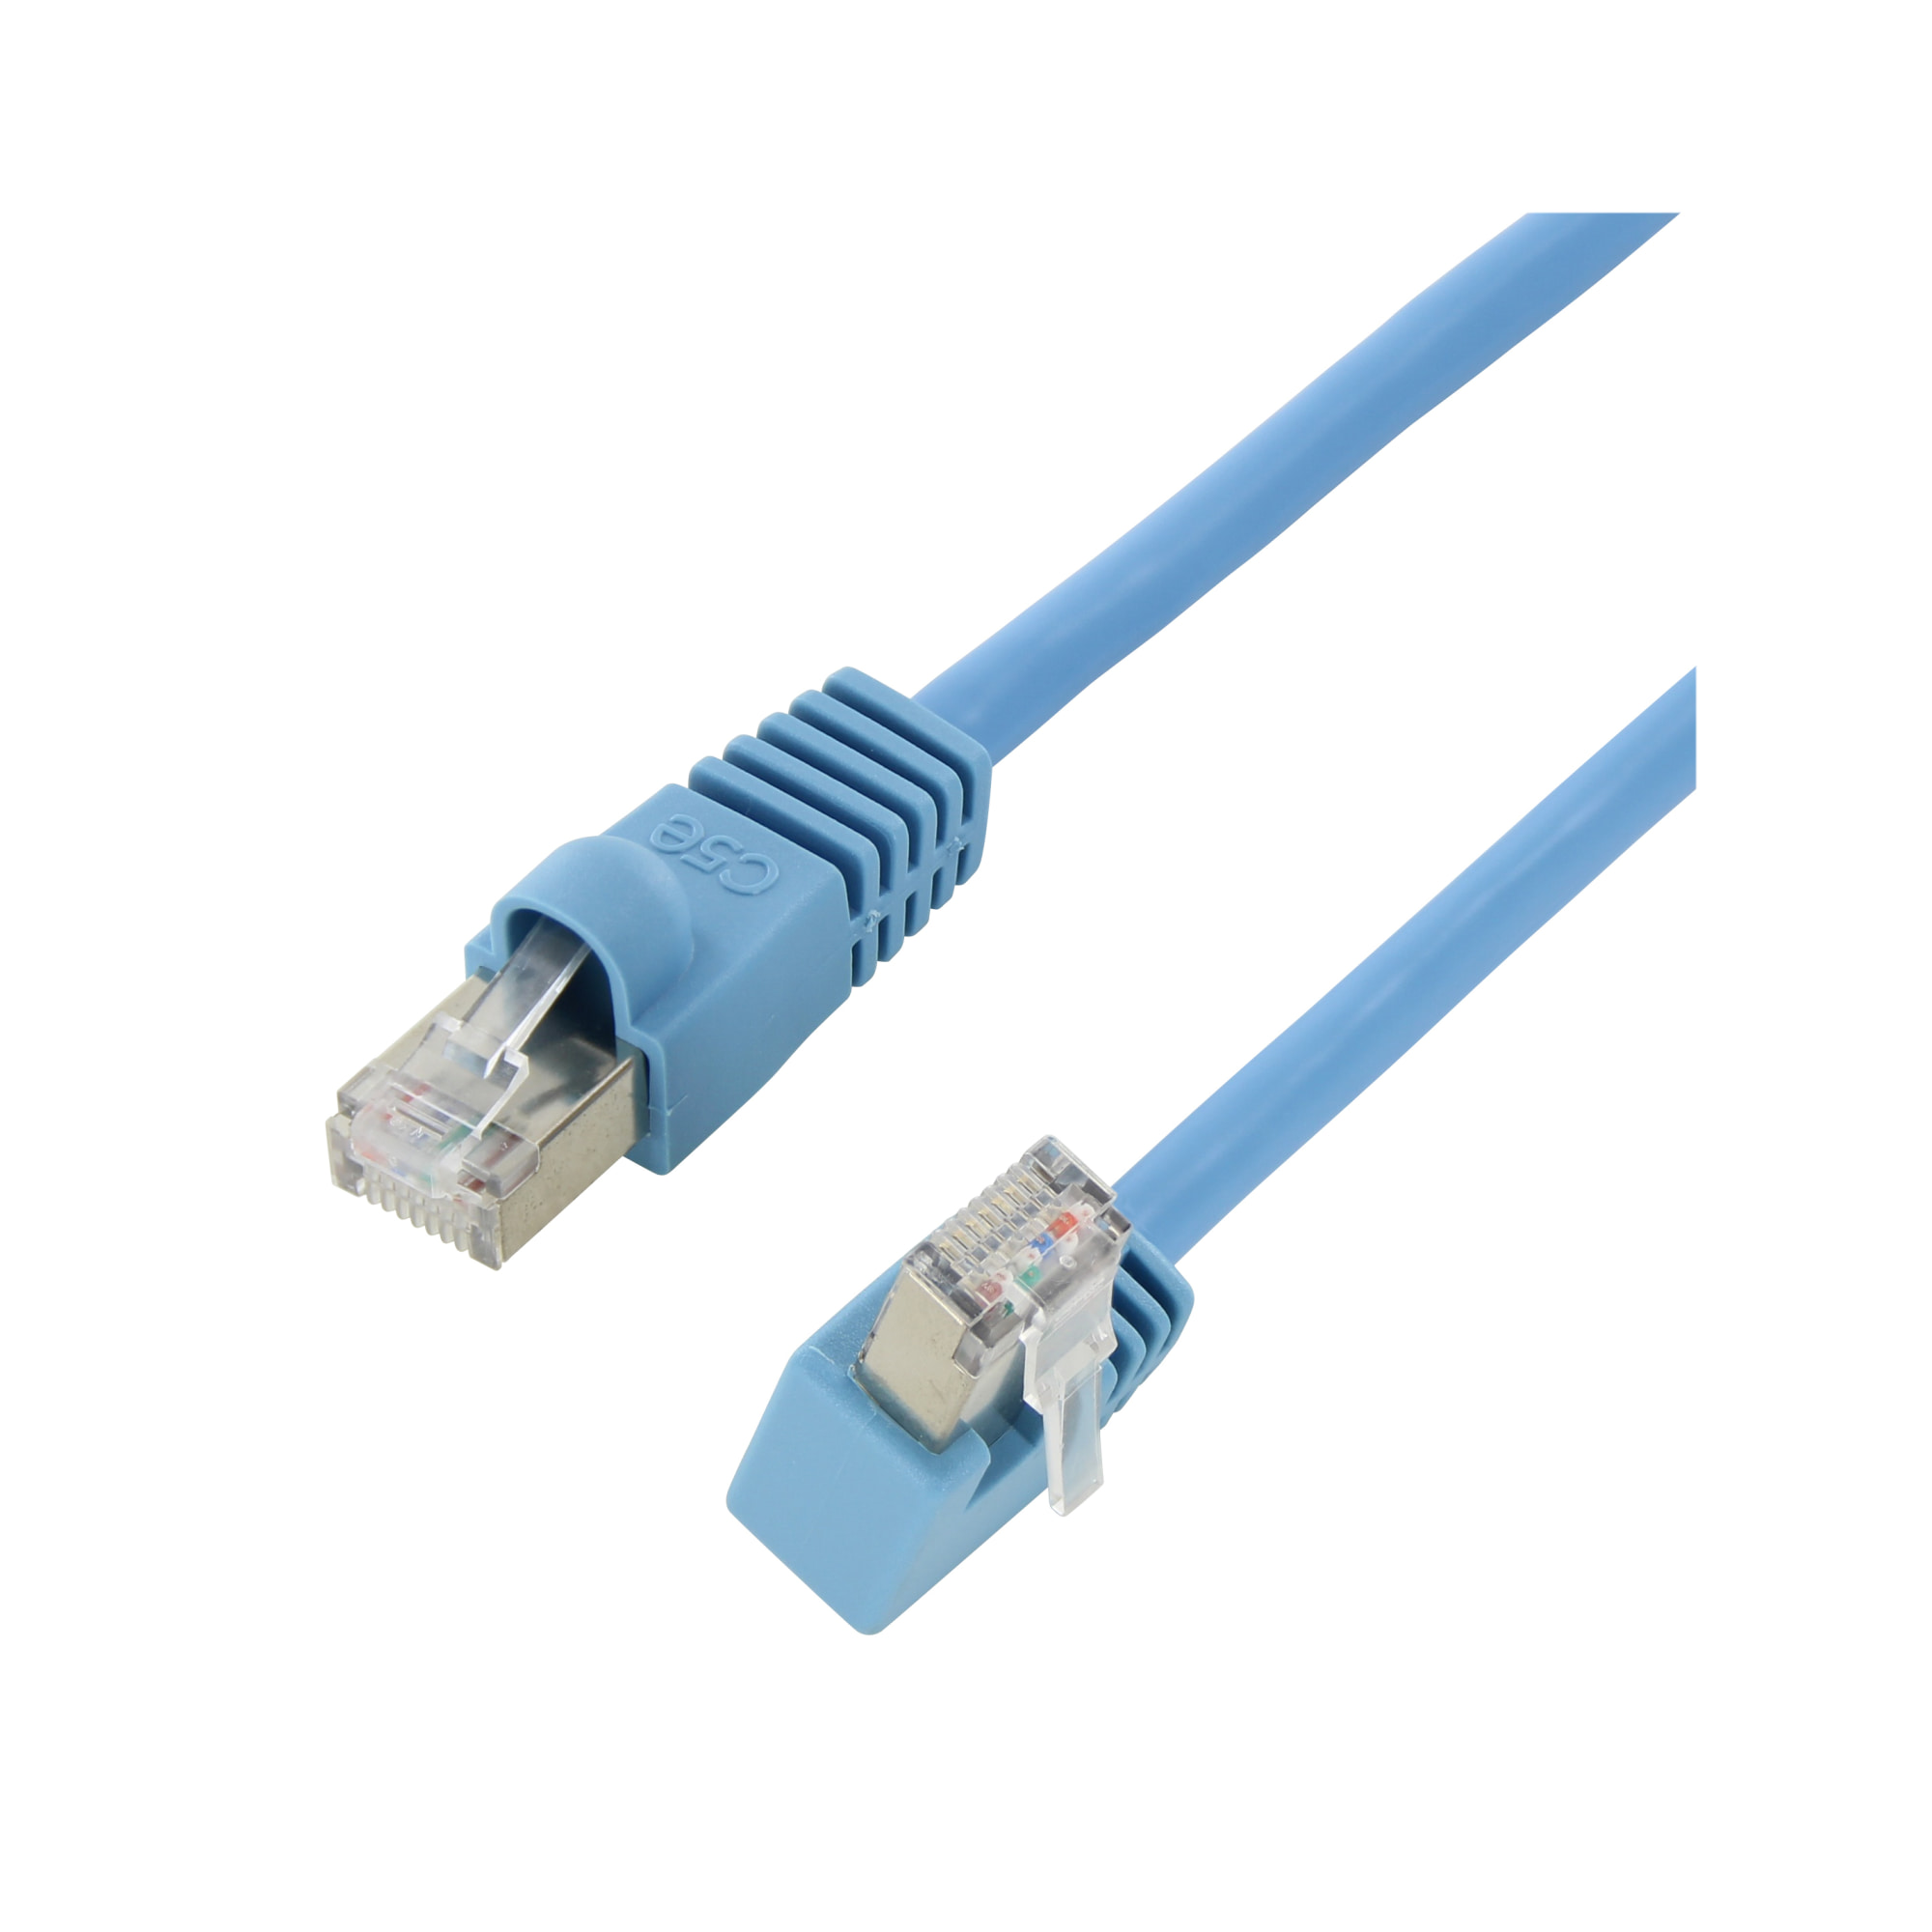 Cable Length: Other Cables 1 Set CAT5e RJ45 8P8C HM-HB01 Model UTP Unshielded Single Port Desktop Mount Box Hot Selling 